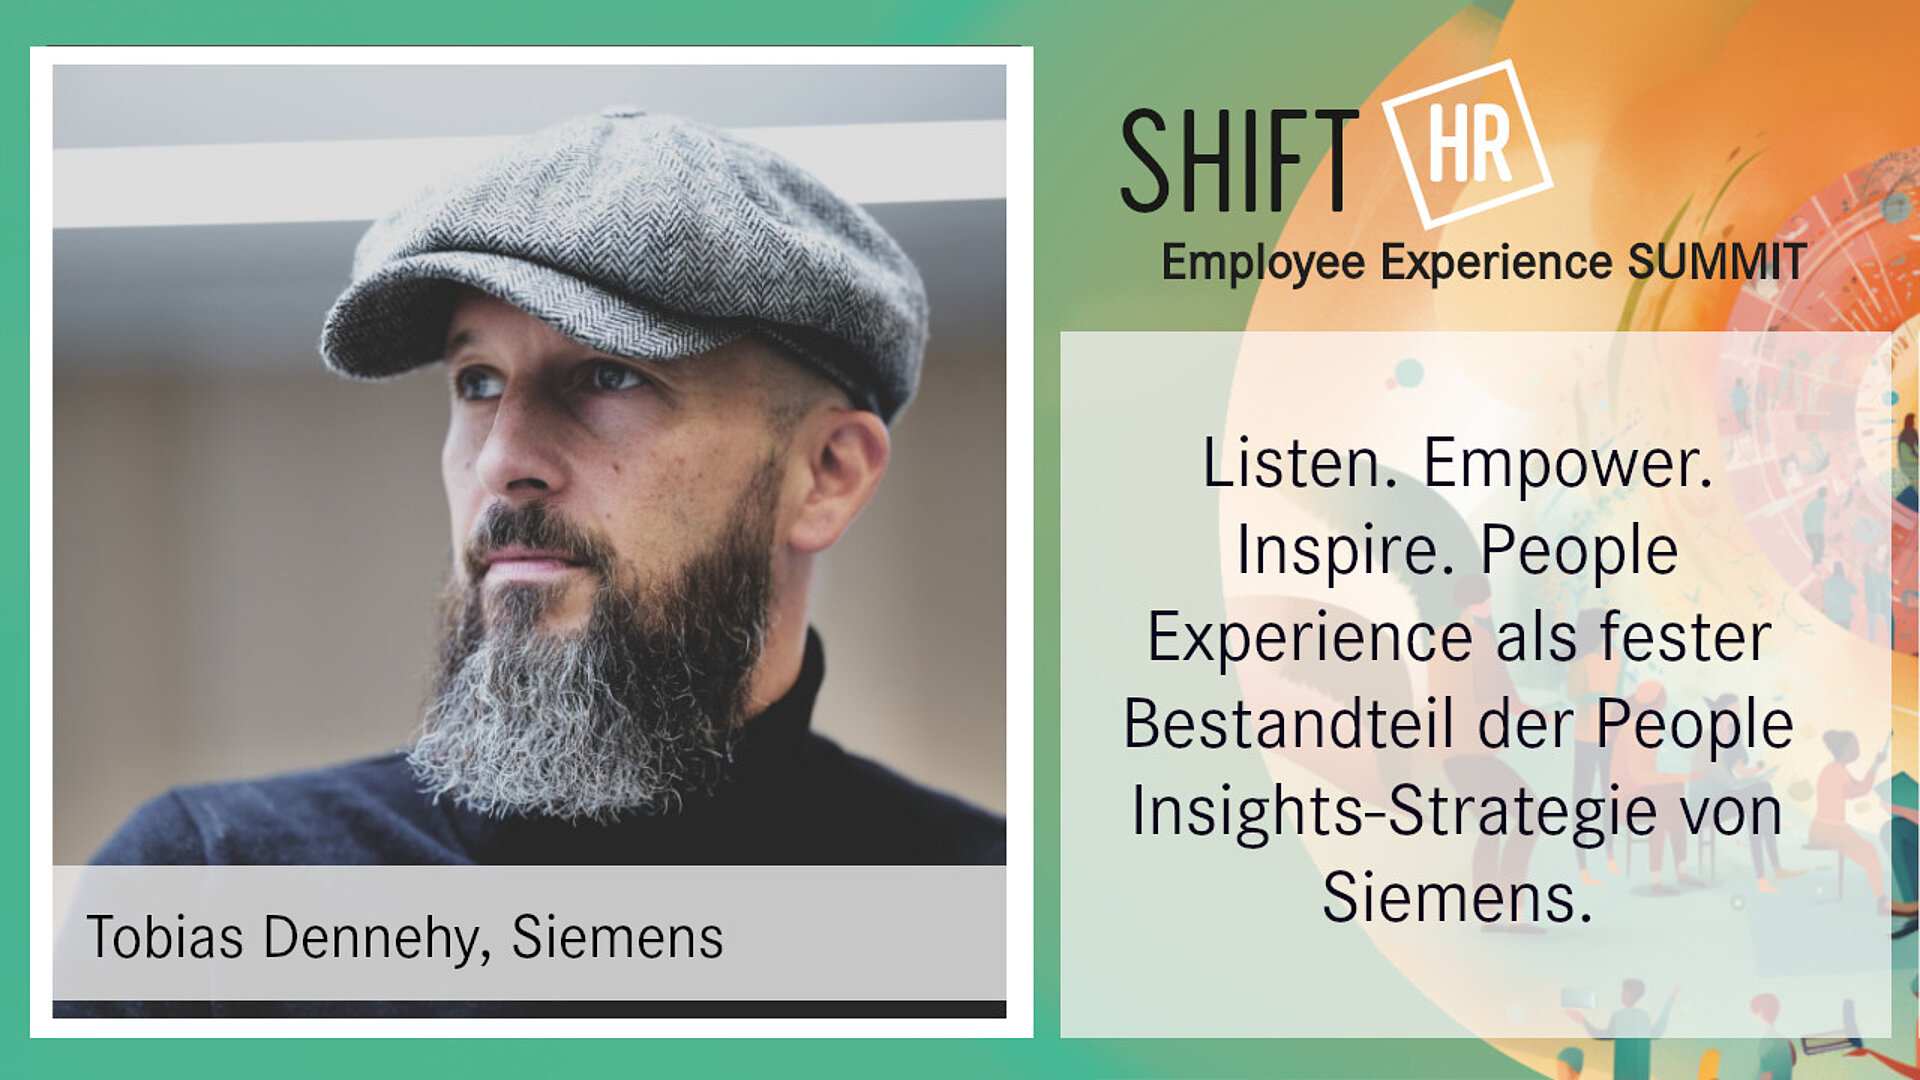 Listen. Empower. Inspire. People Experience als fester Bestandteil der People Insights-Strategie von Siemens.